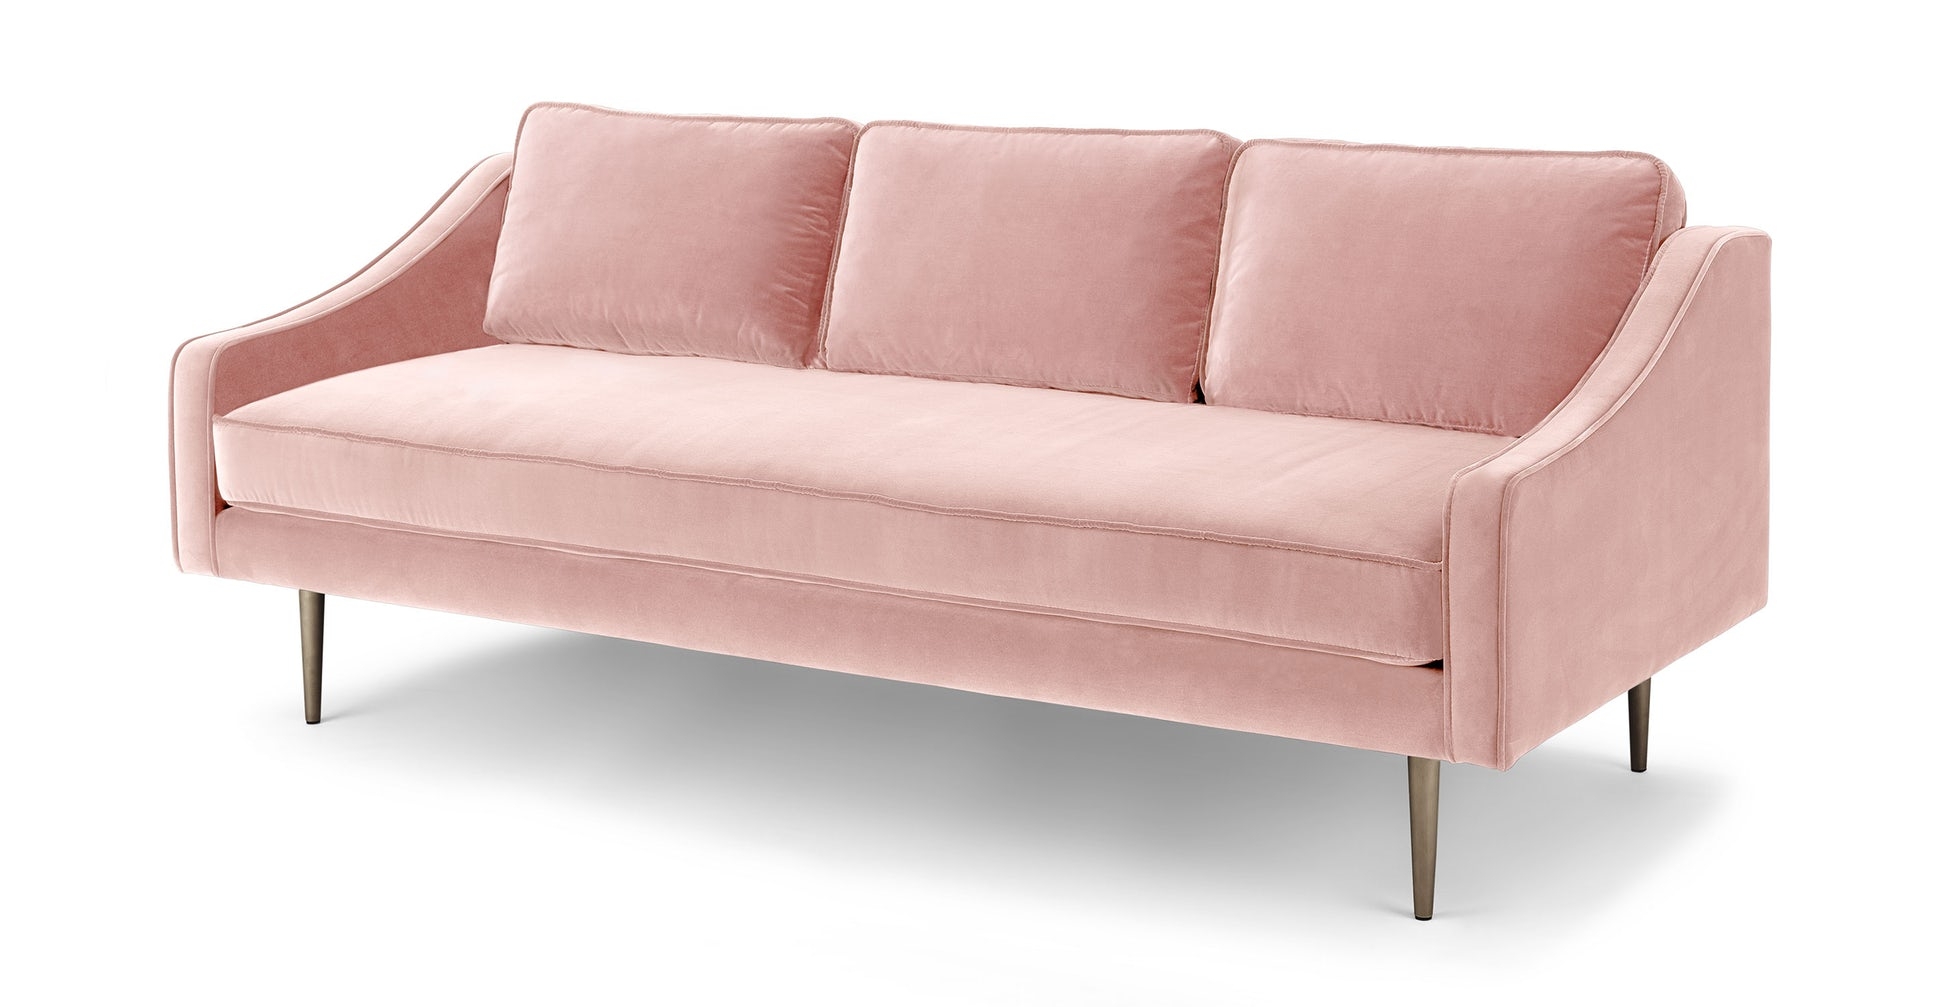 Mirage Blush Pink Sofa - Image 2